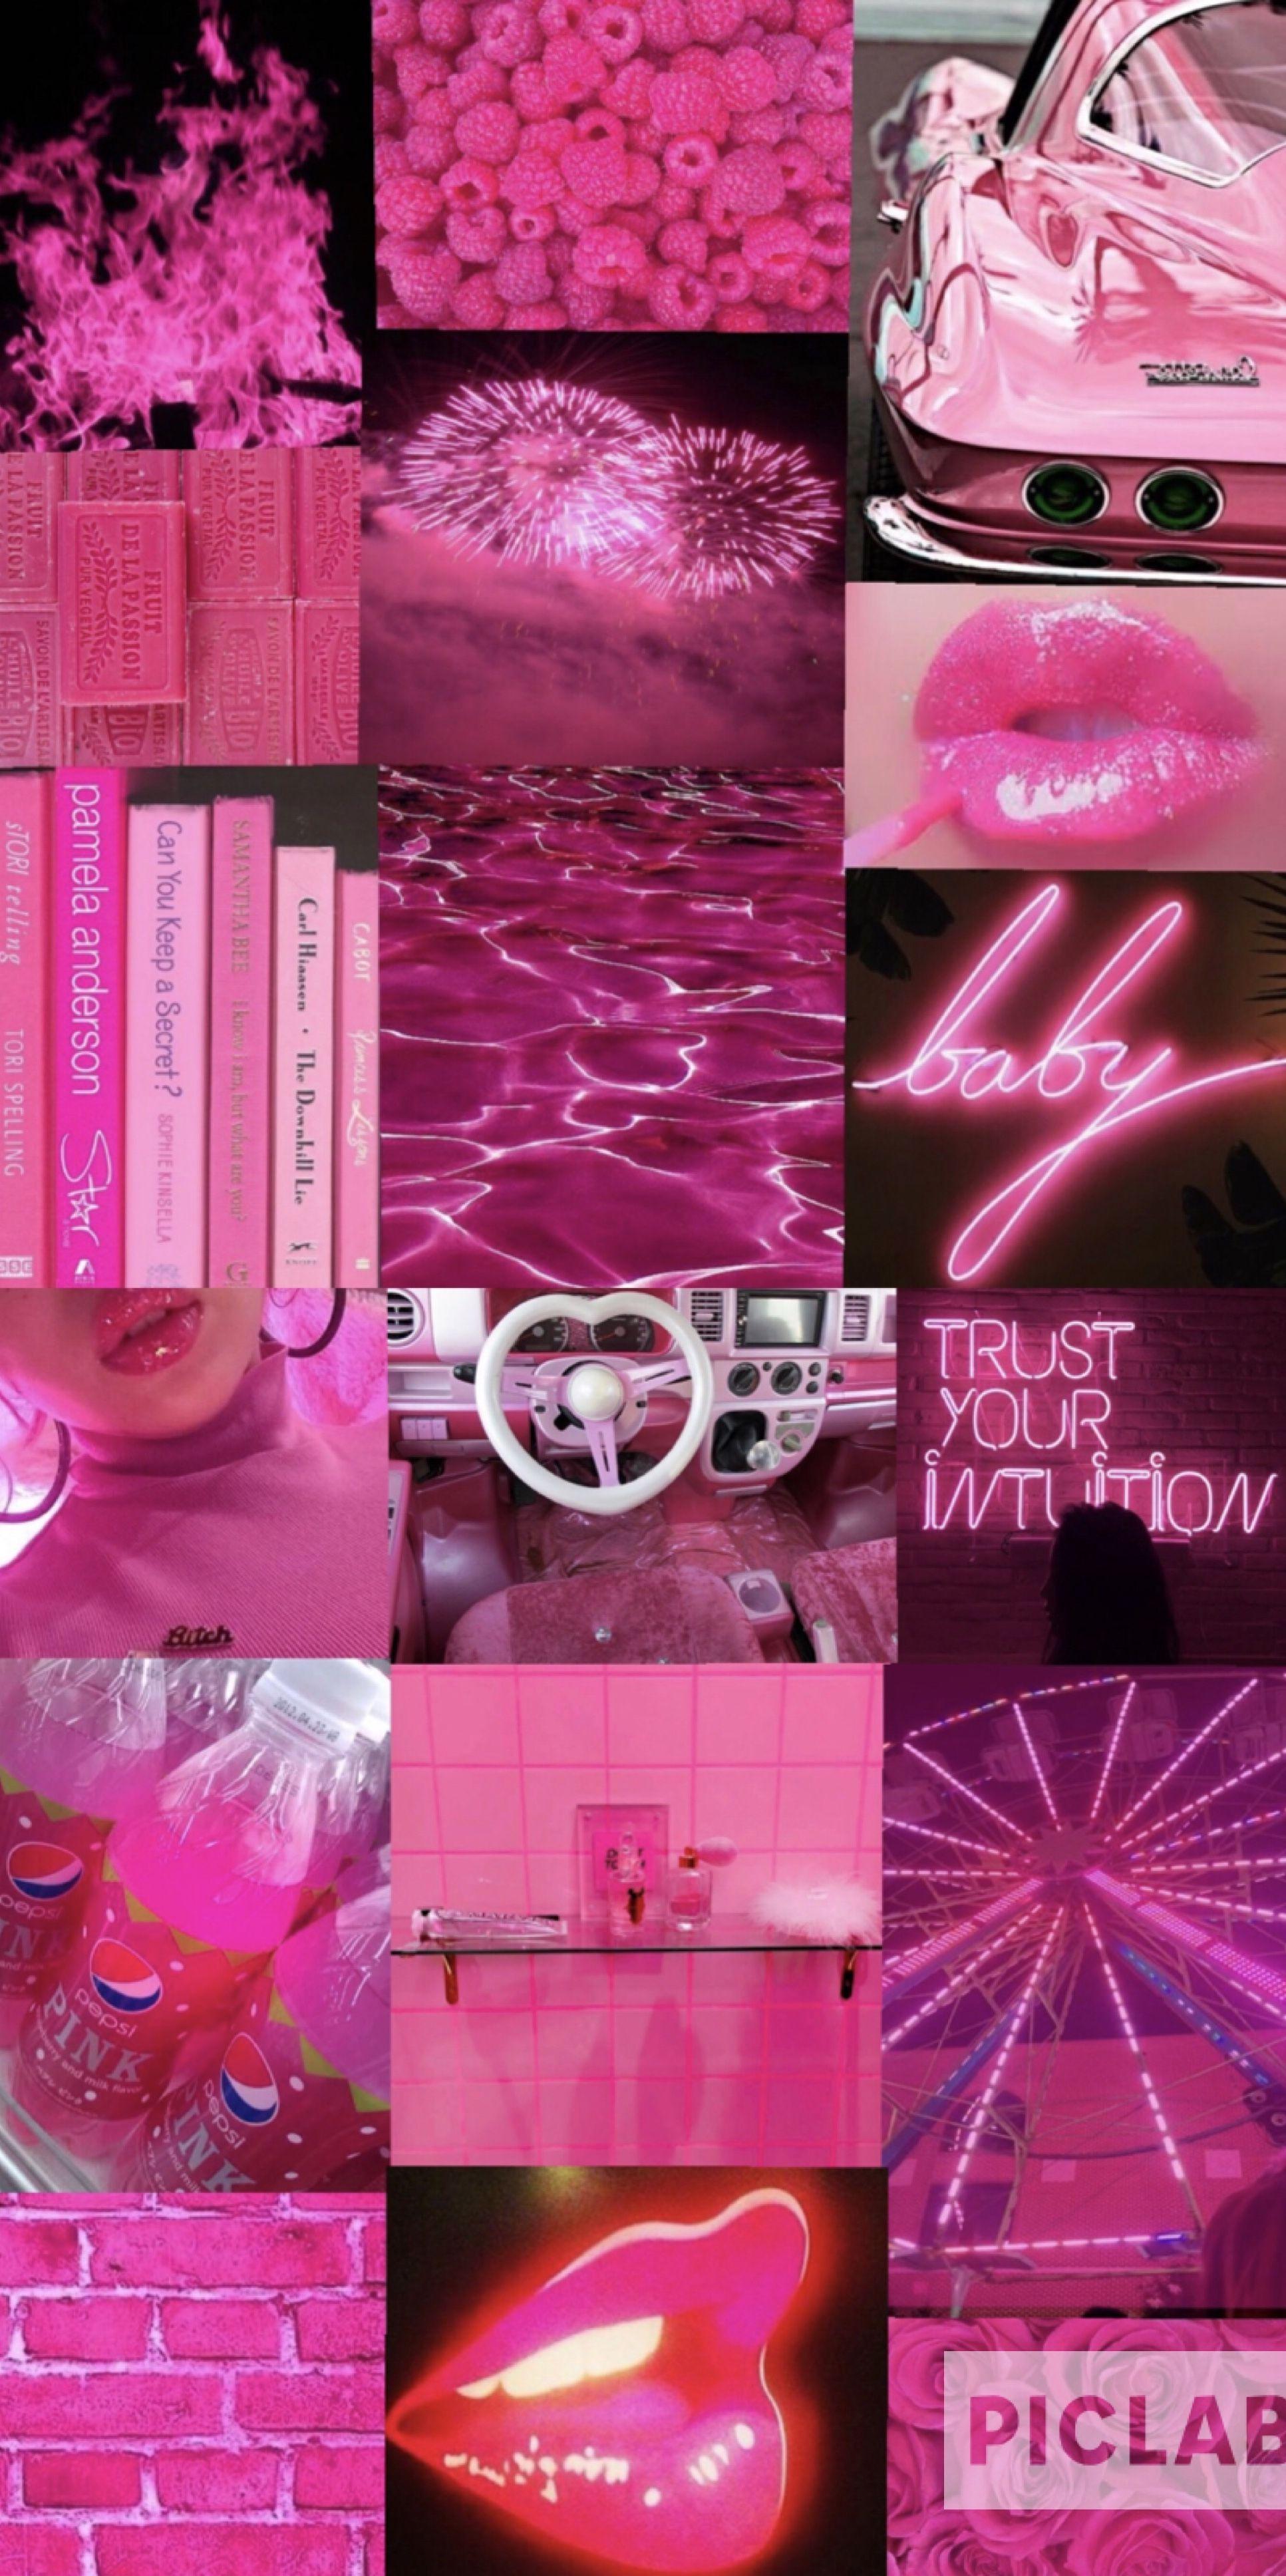 Hãy cùng trải nghiệm sự kết hợp đầy cuốn hút của màu Hot pink trong các bức ảnh thẩm mỹ để thể hiện cá tính của bạn!